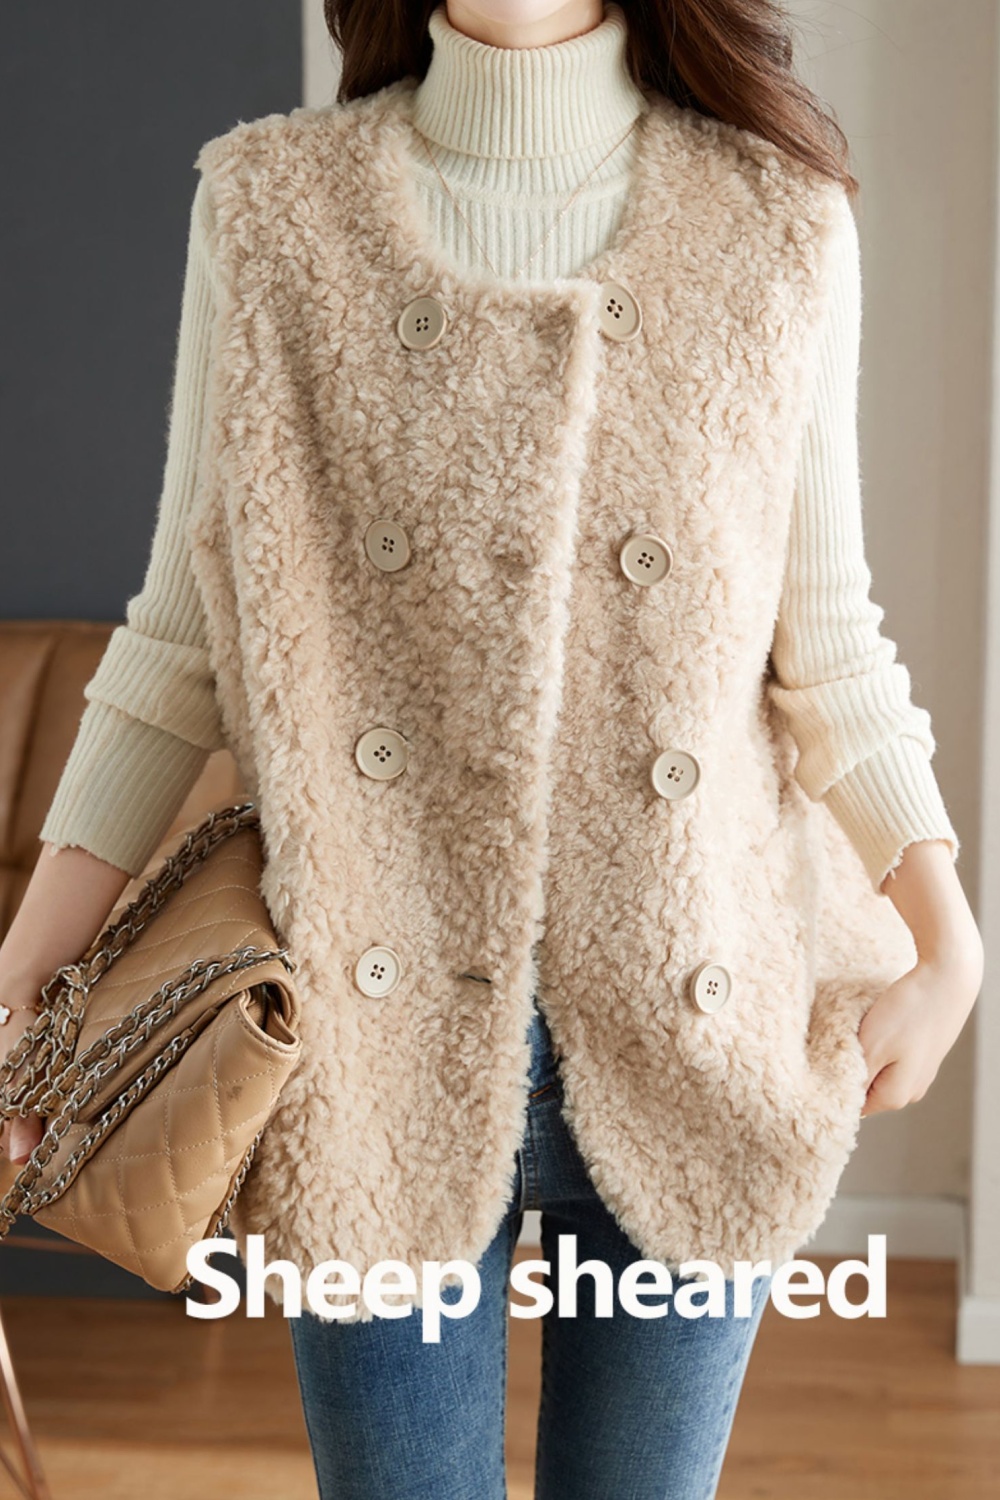 Fashion velvet jacket waistcoat winter fur coat for women